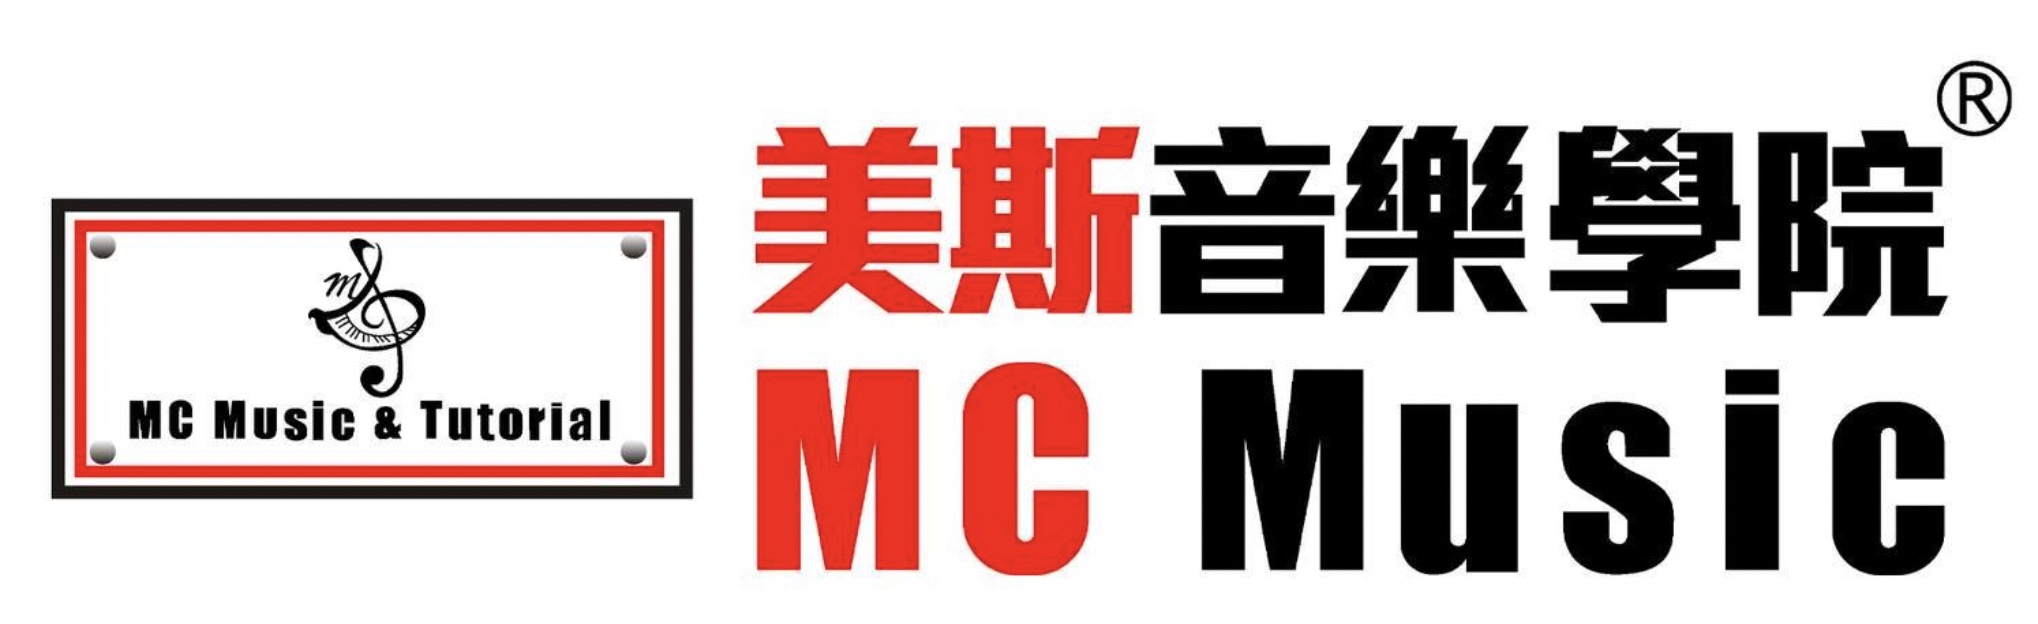 重點客戶 - MC Music 美斯音樂 @ Compbrother Ltd 腦爸打有限公司